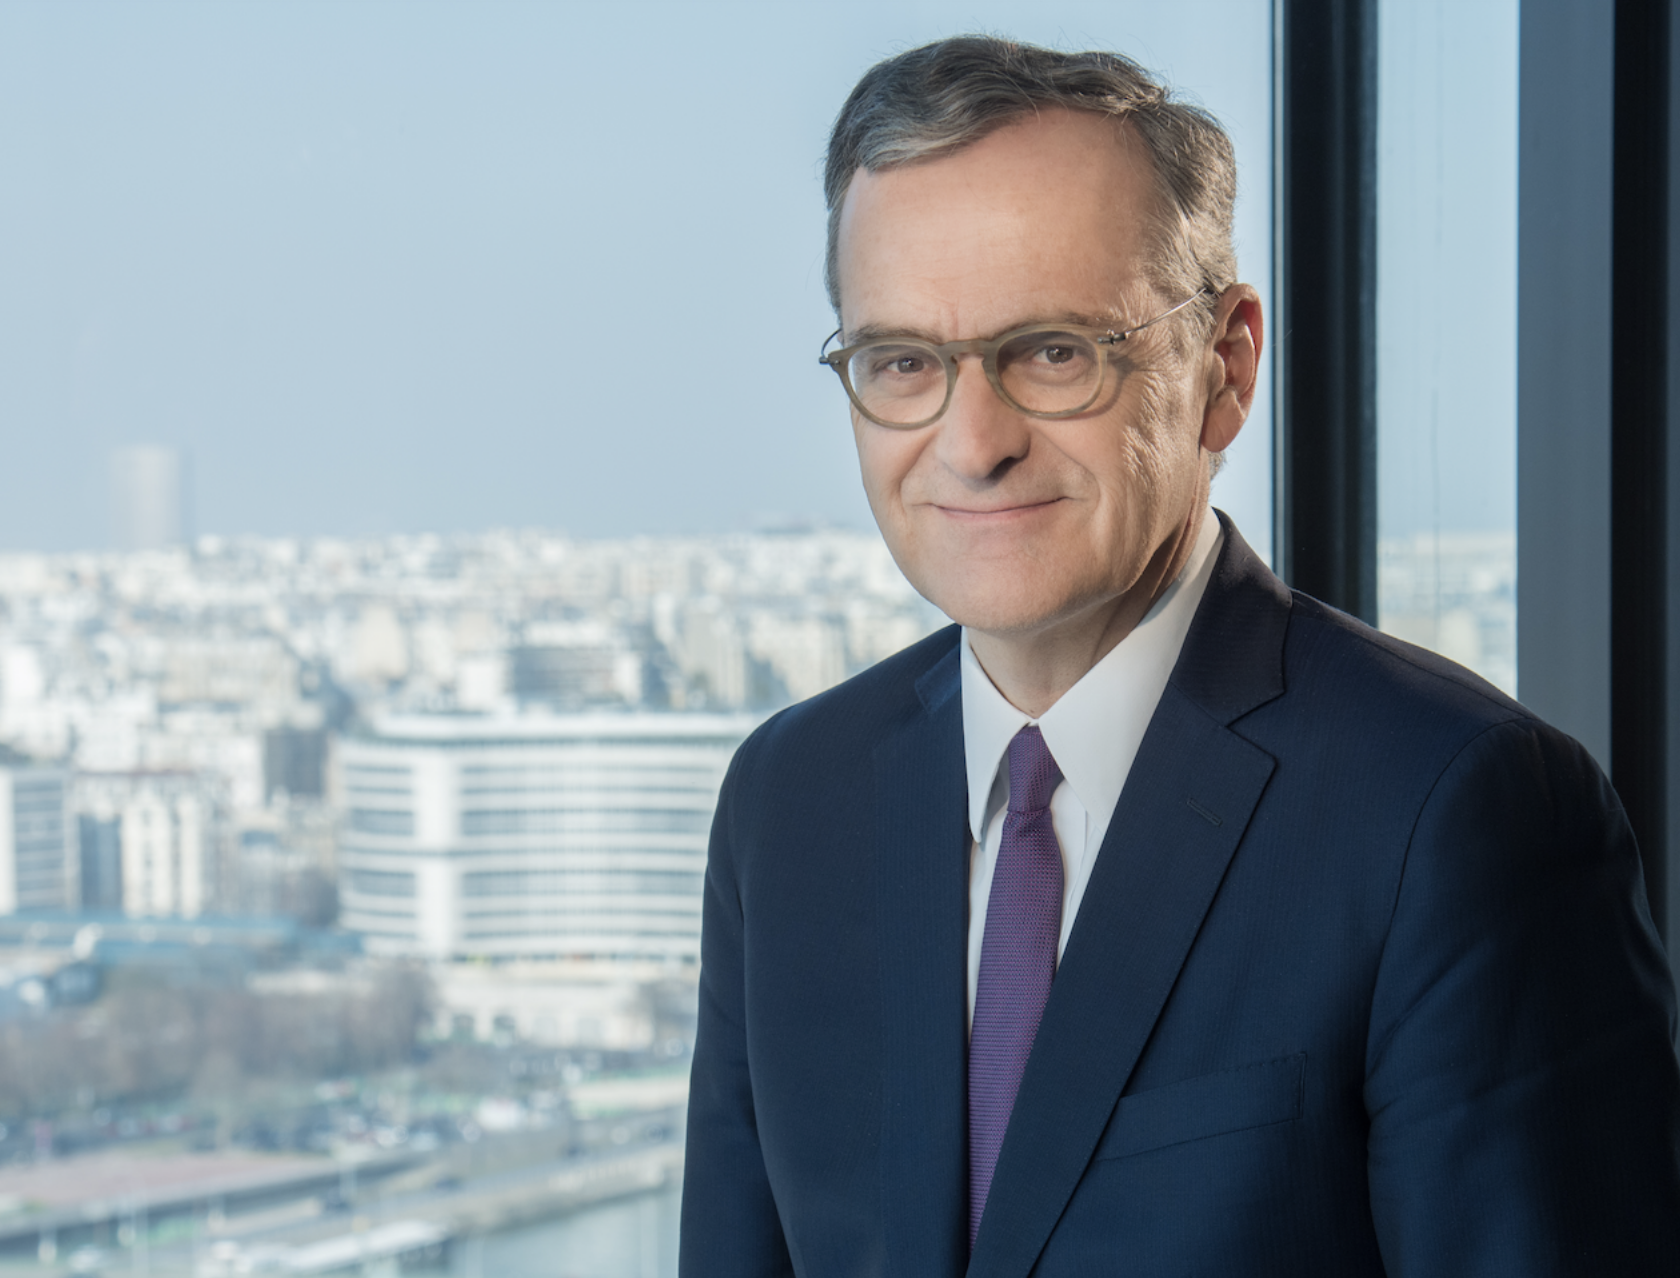 Ancien de la Cour des comptes, Roch-Olivier Maistre préside le CSA depuis le 4 février 2019 jusqu'en janvier 2025.